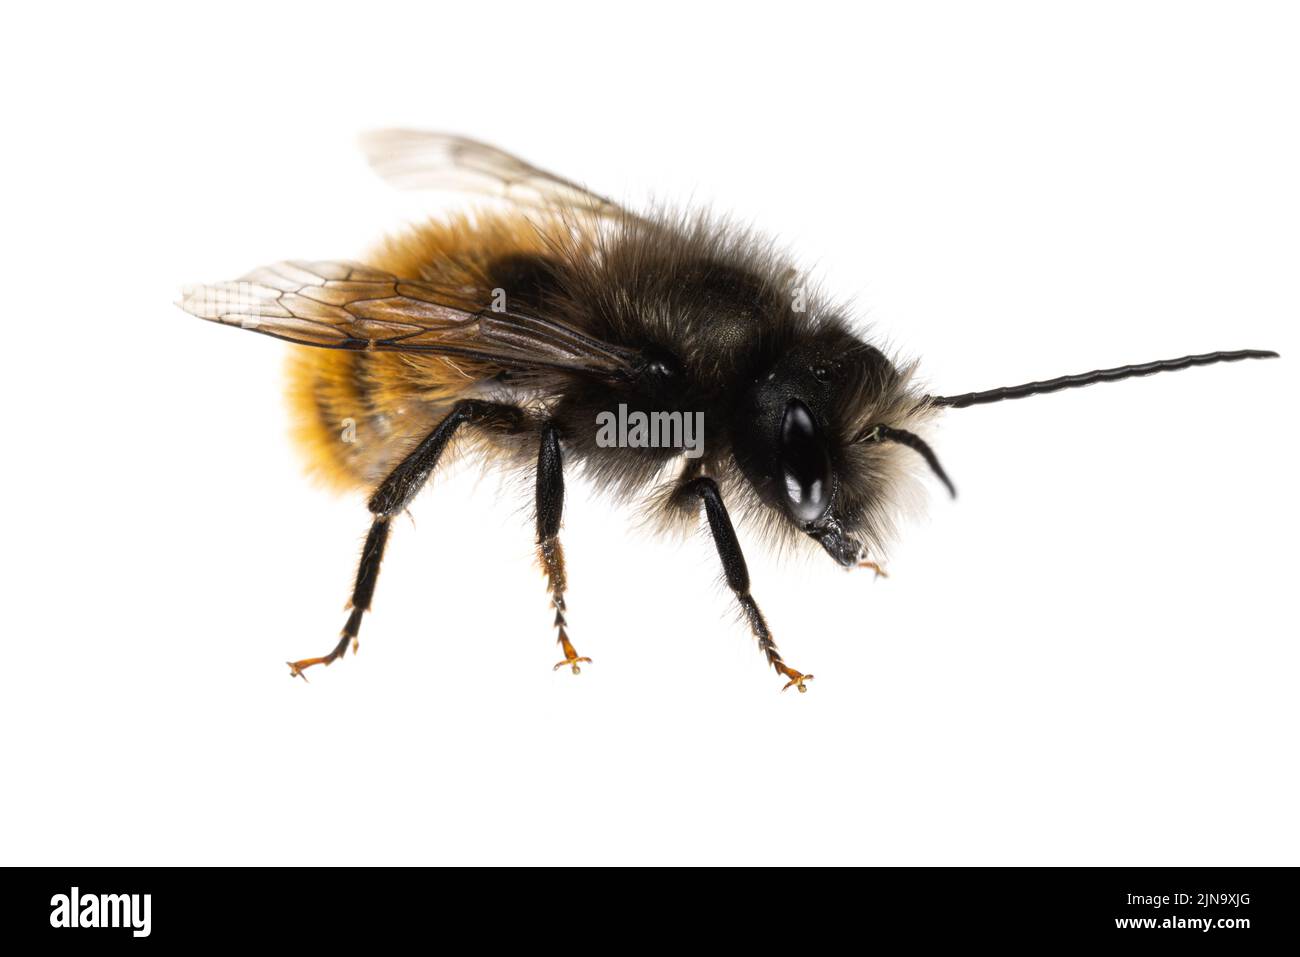 Insects of europe - Bienen: Makro der männlichen Osmia cornuta Europäische Obstbiene (deutsche gehörnte Mauerbiene) isoliert auf weißem Hintergrund Seitenansicht Stockfoto